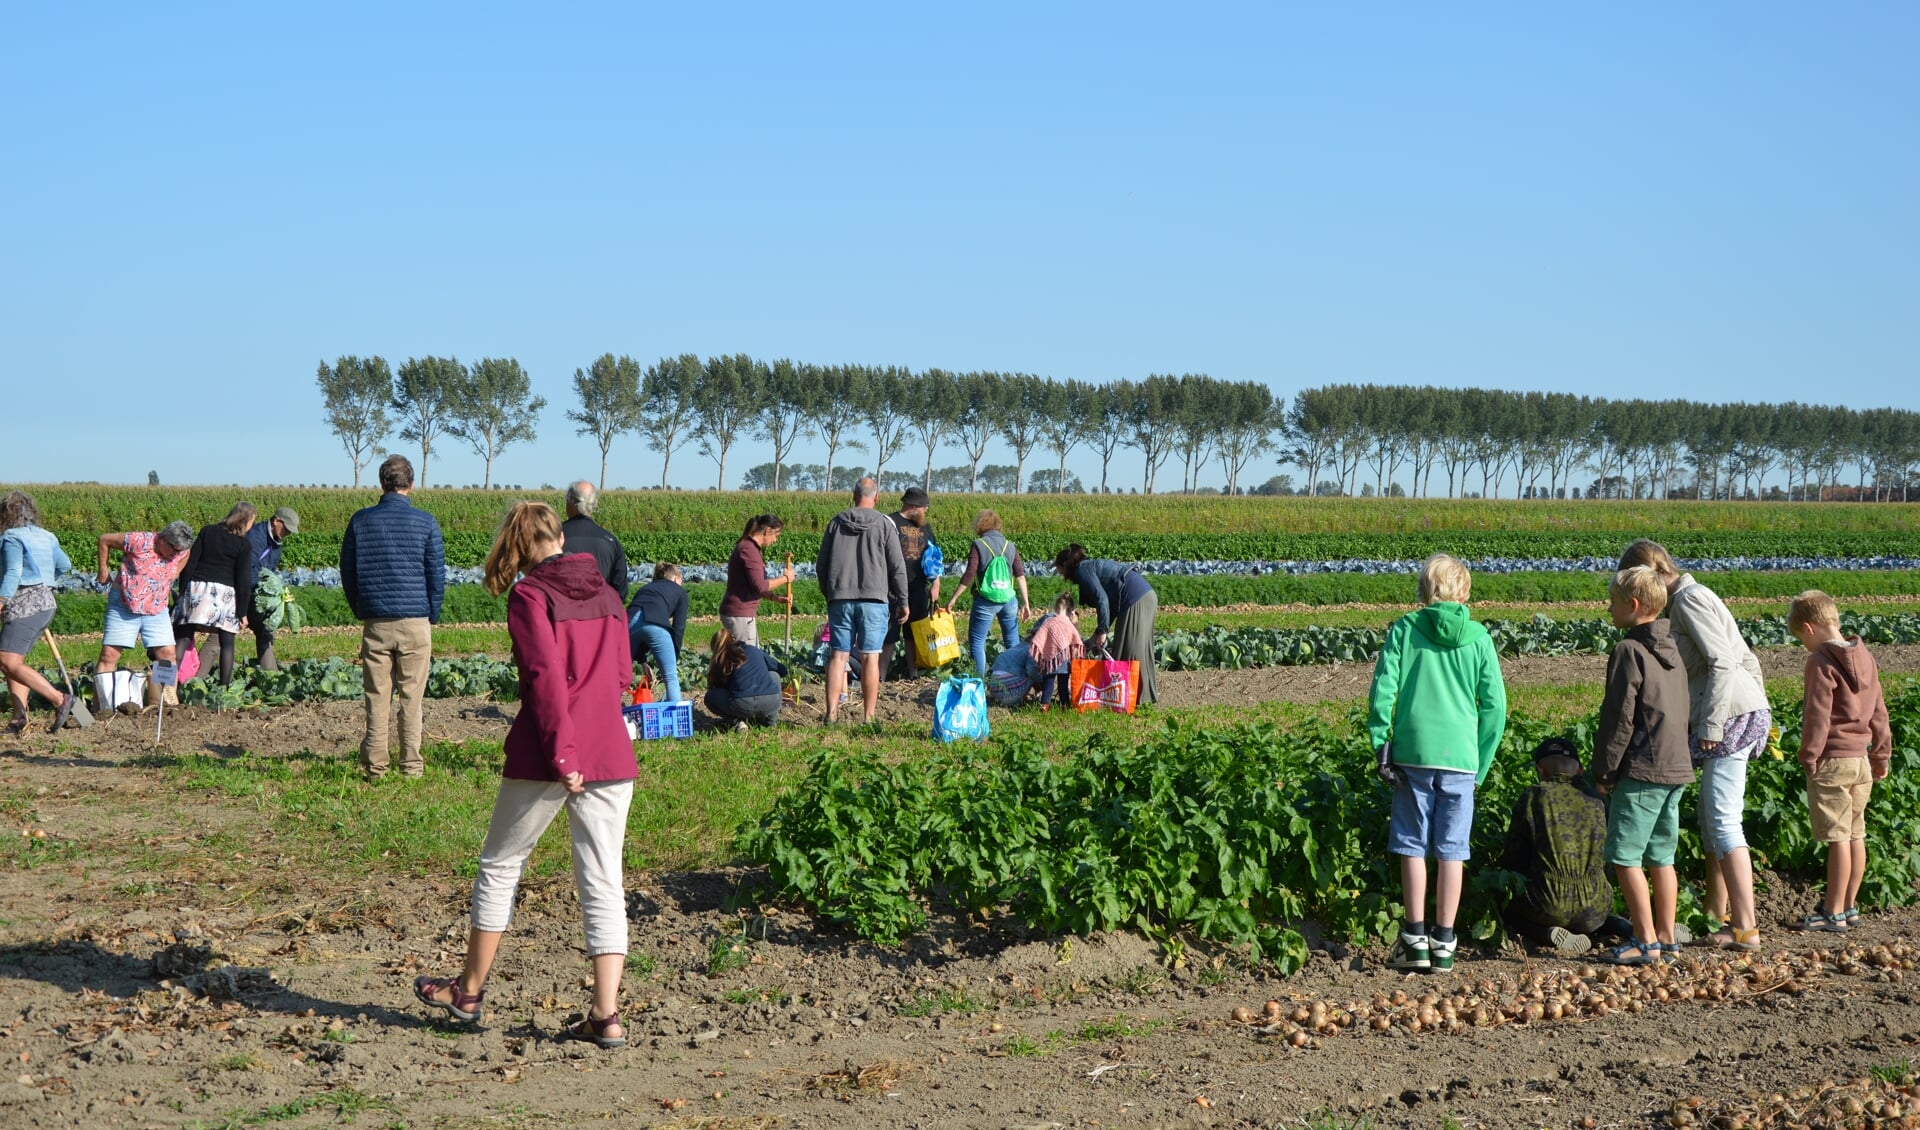 De bezoekers mochten zelf groenten oogsten (Foto: Erwin Guijt).